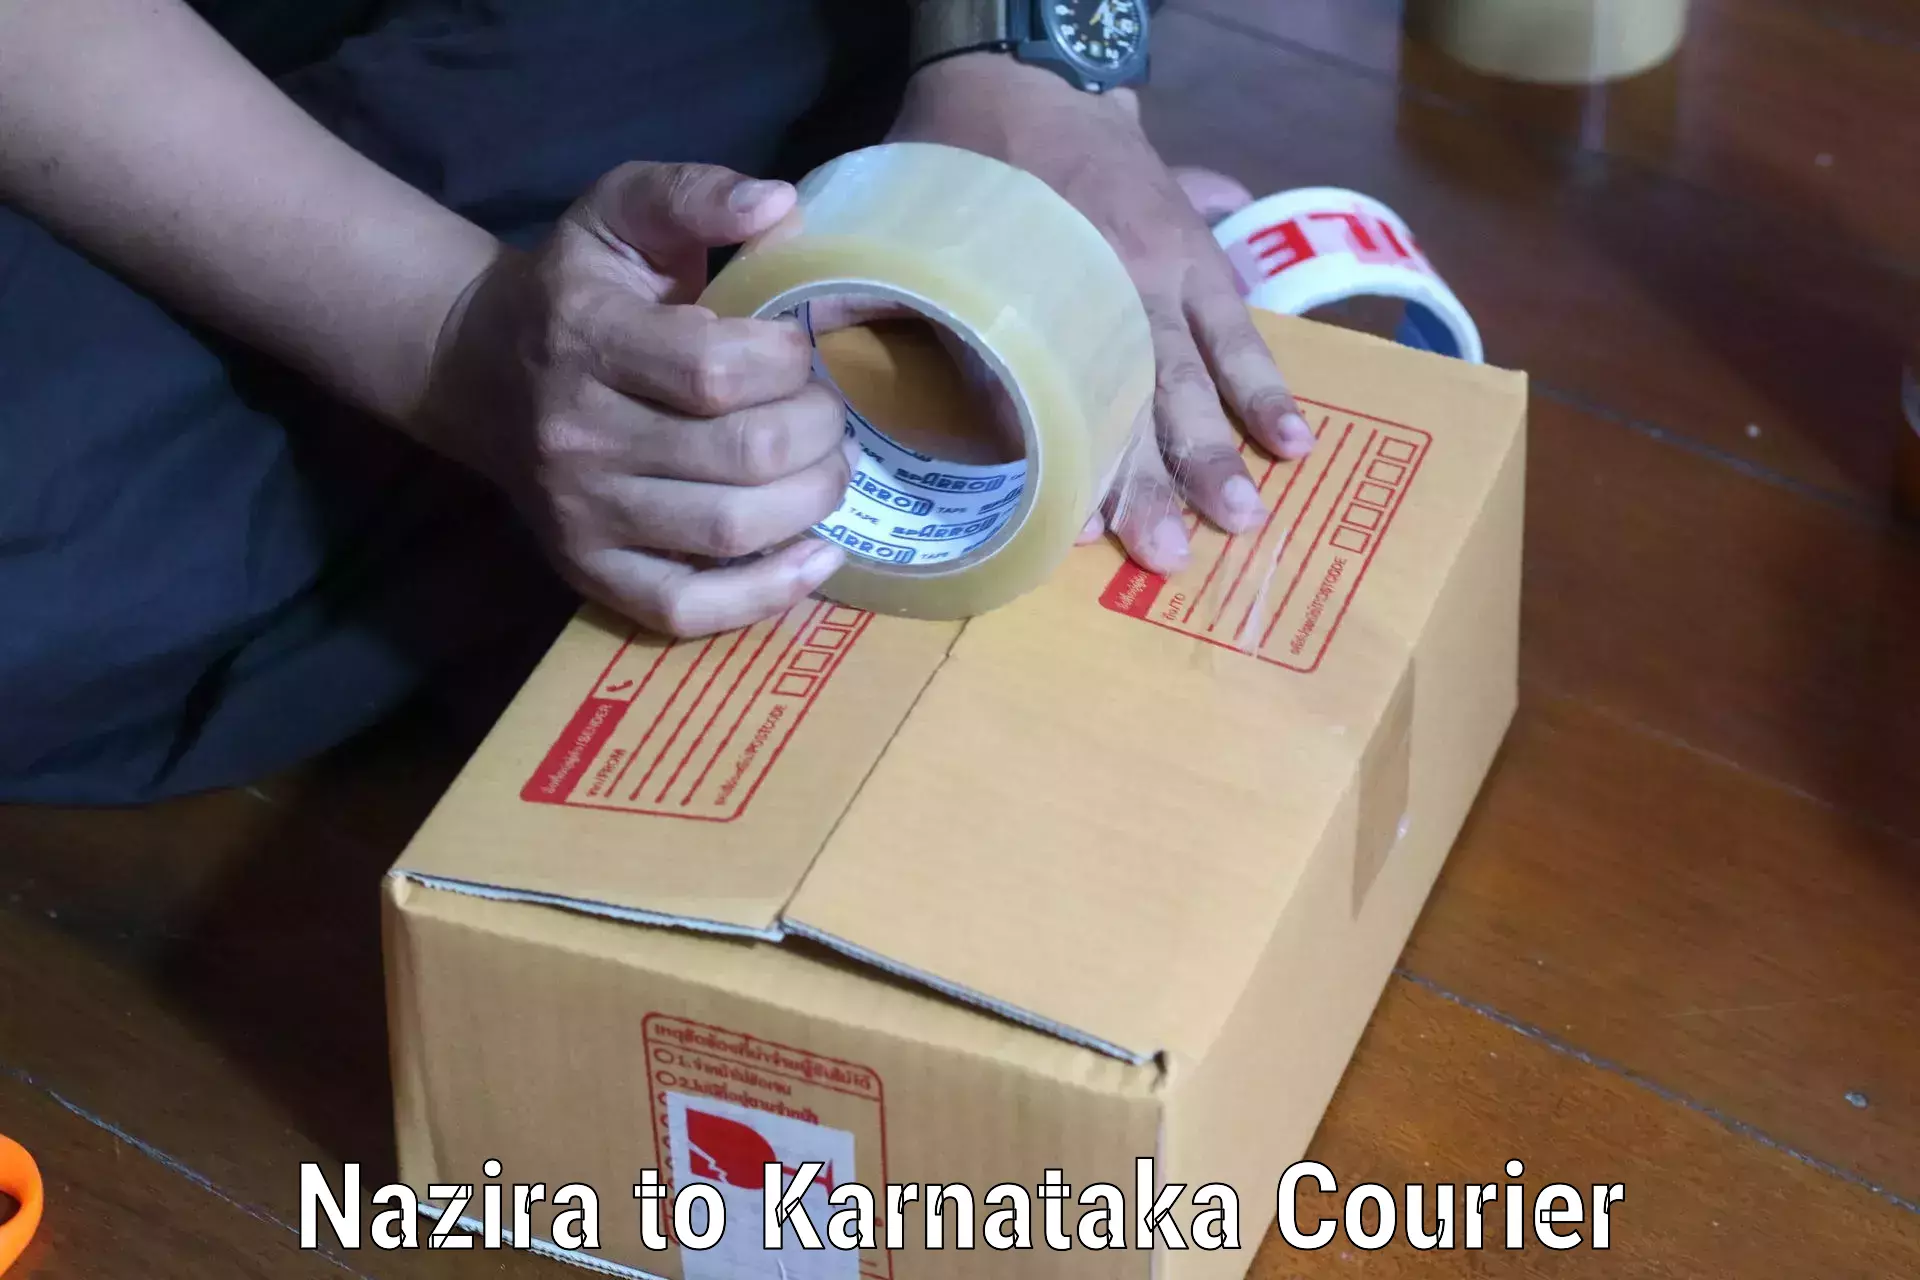 Efficient order fulfillment Nazira to Mannaekhelli